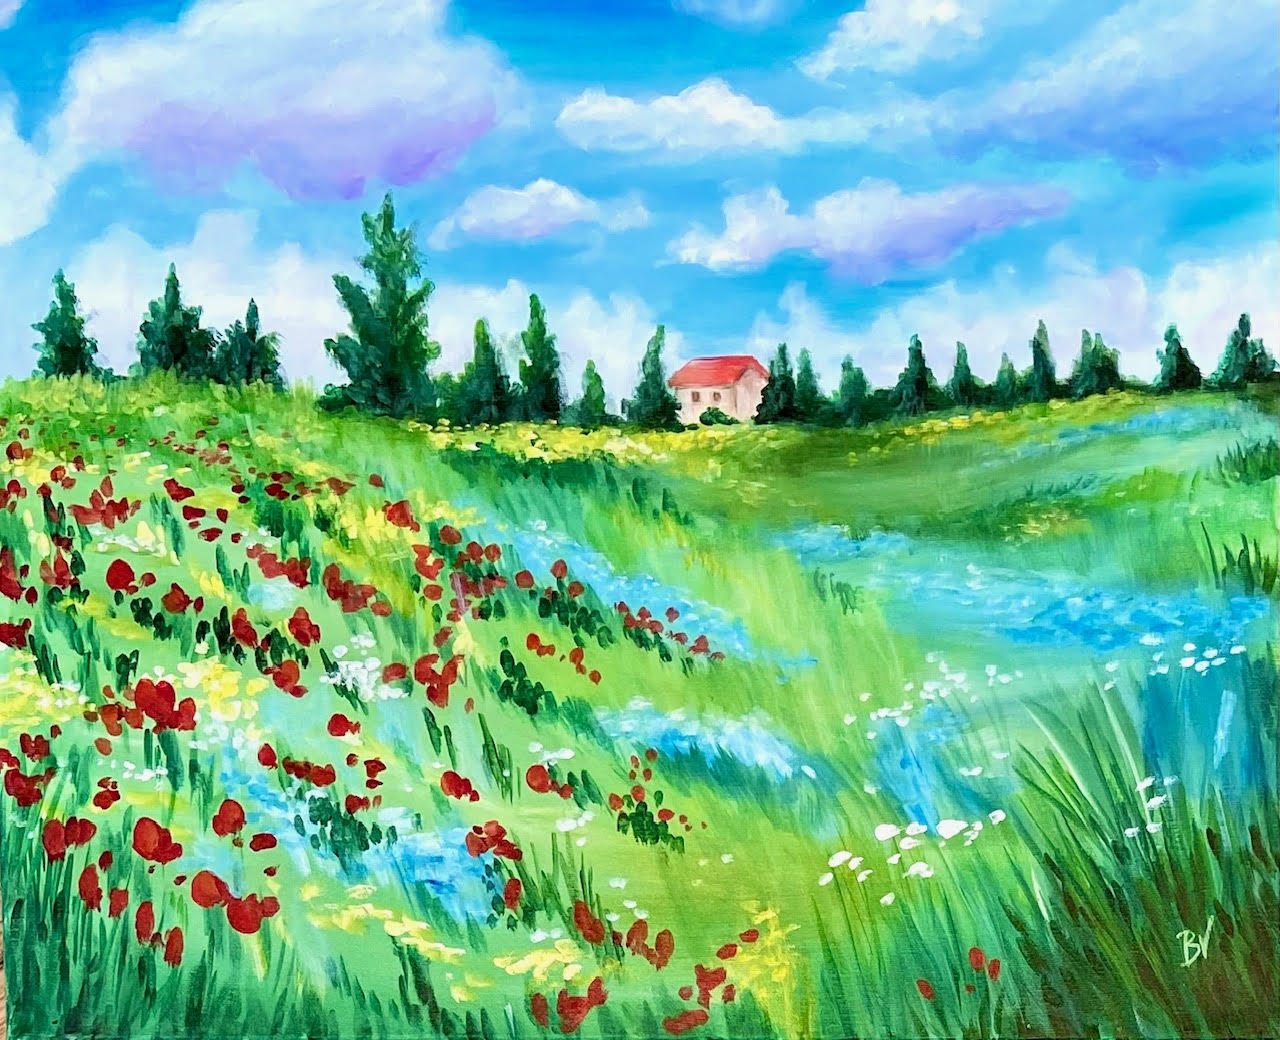 Monet's Flower Field